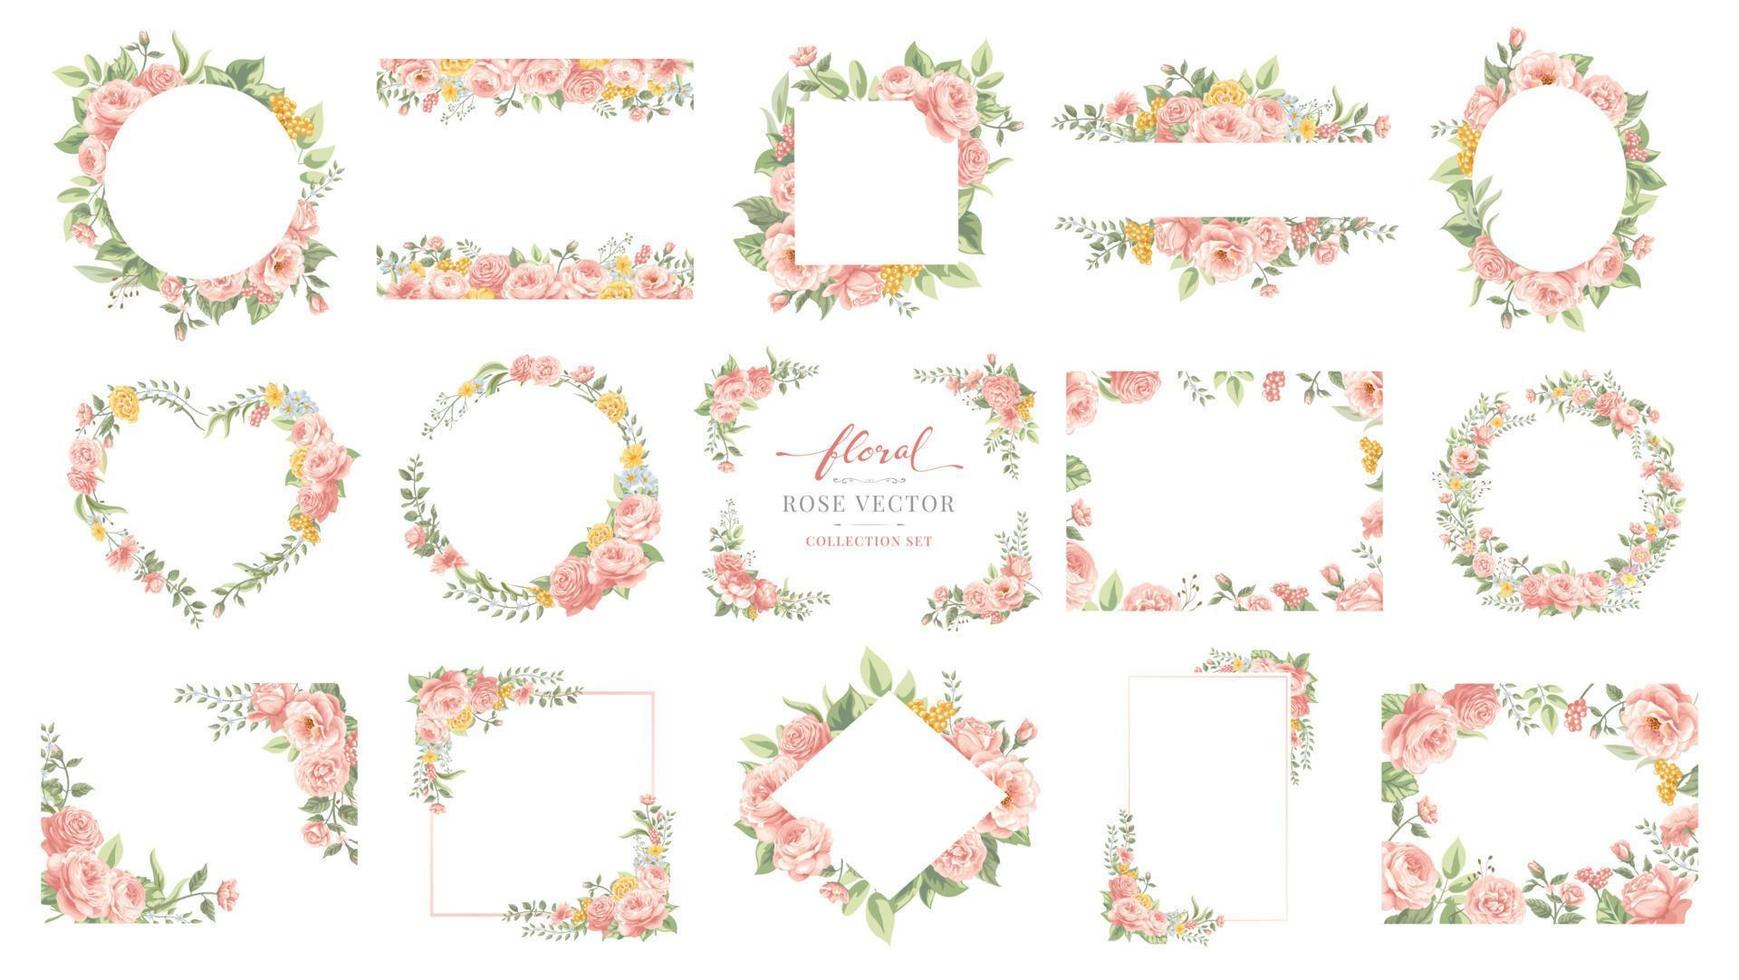 collectie set mooie roze bloem en botanisch blad digitale geschilderde illustratie voor liefde bruiloft Valentijnsdag of arrangement uitnodiging ontwerp wenskaart vector